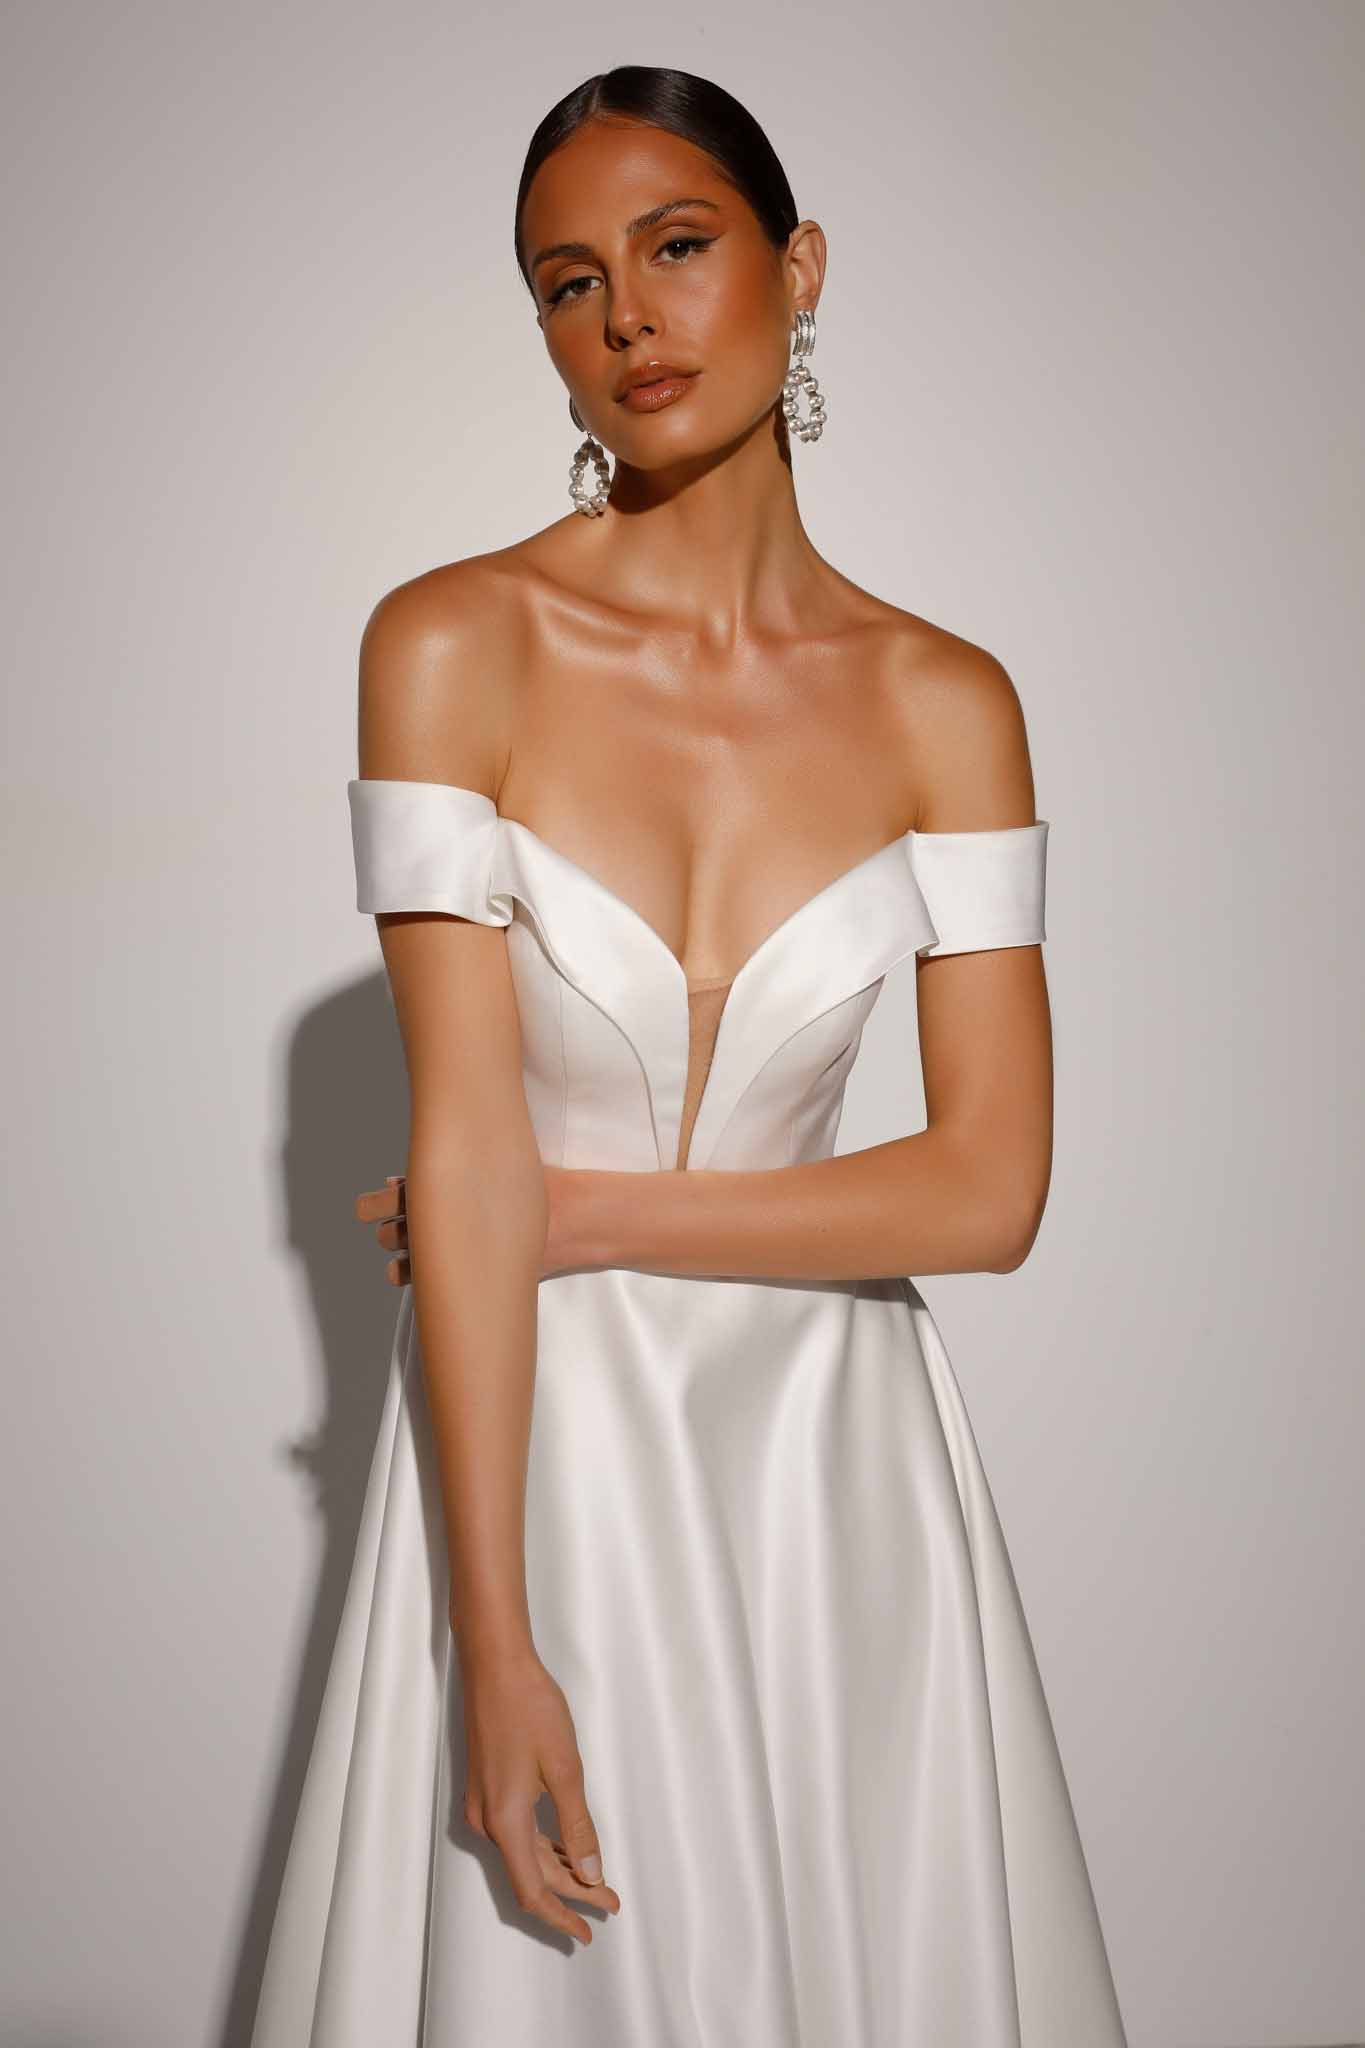 Miller by Evie Young satin wedding dress Revelle Bridal designer off-the-shoulder straps wedding dress